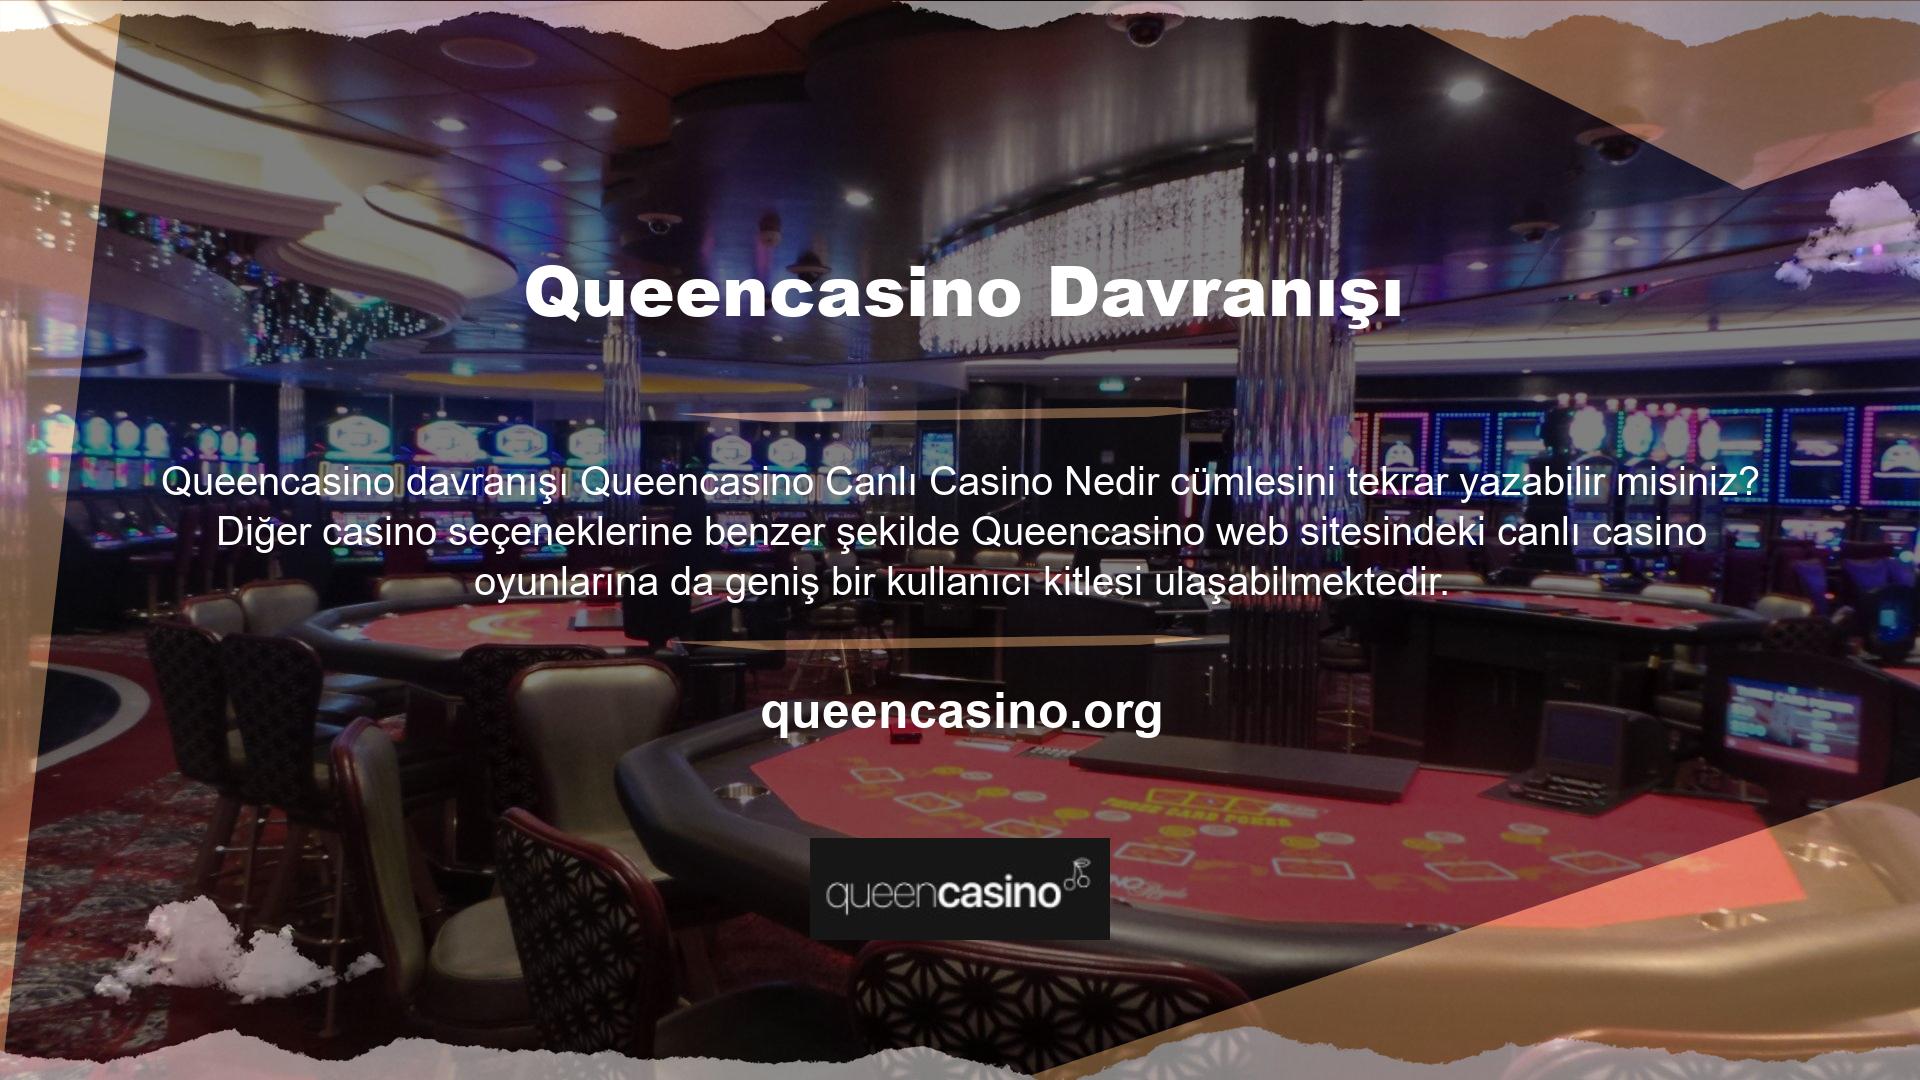 Queencasino ayrıca canlı casino özelliklerini de sergilemektedir